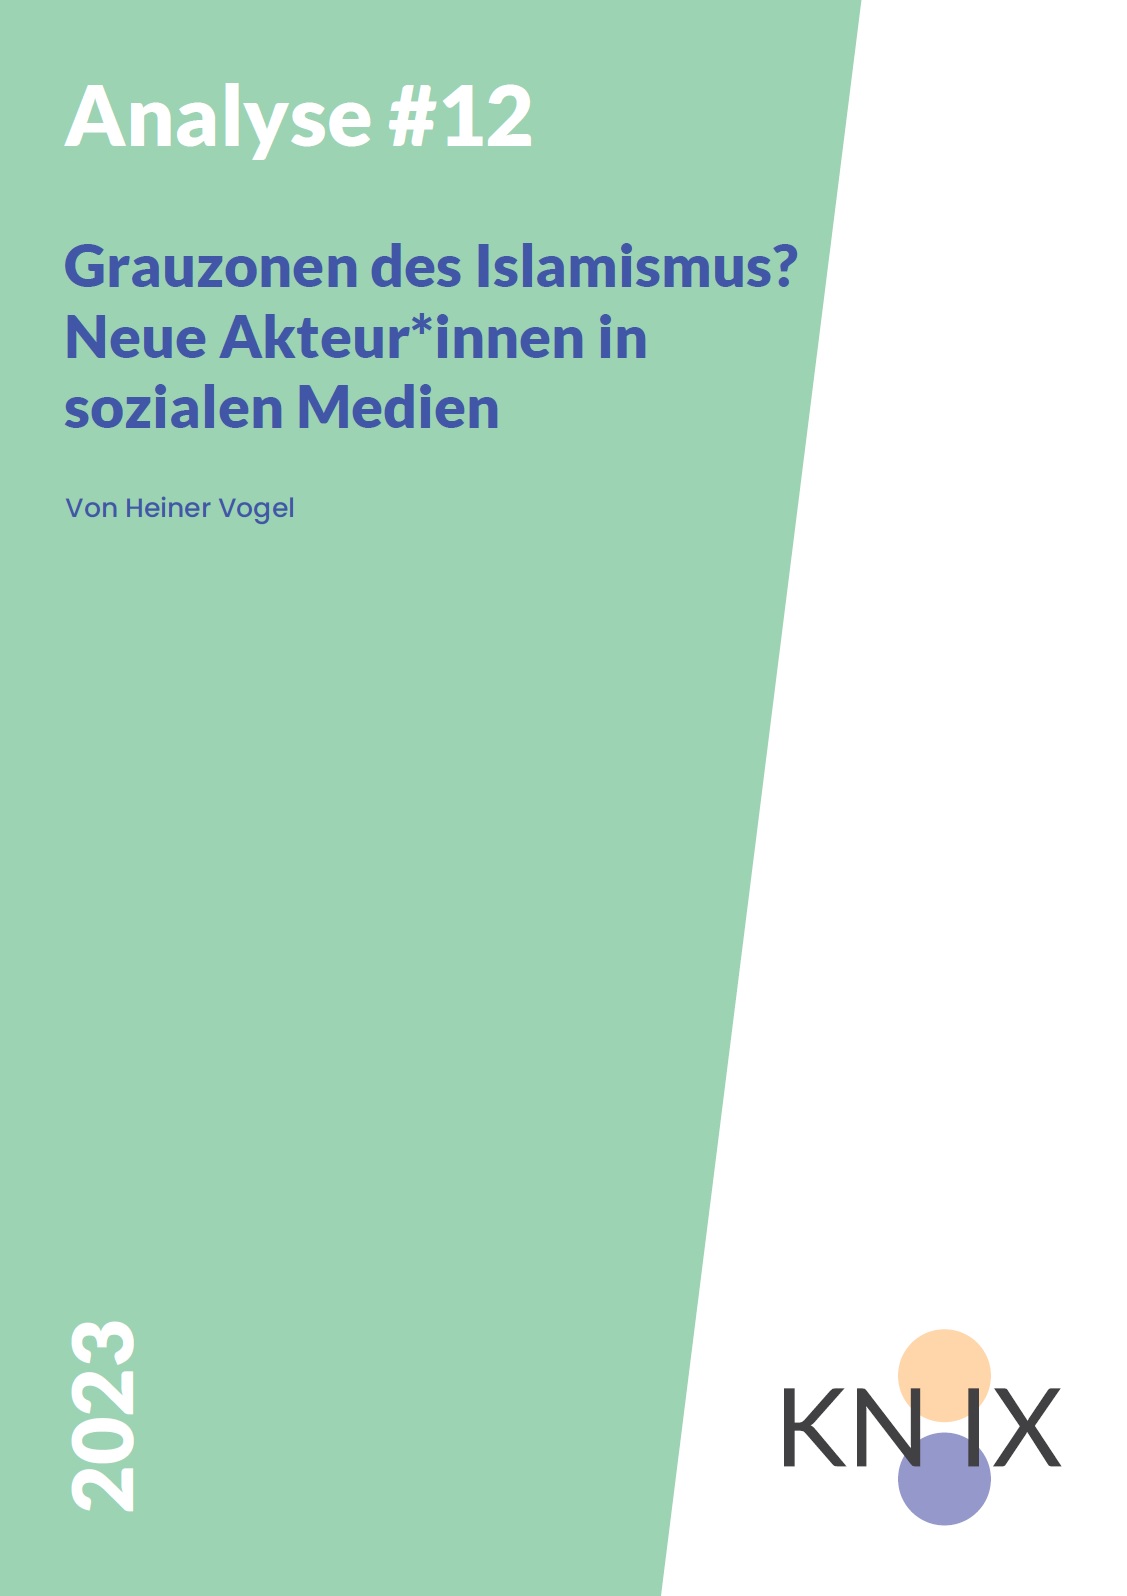 Das Bild ist in zwei Teile unterteilt. Links ist ein hellgrüner Hintergrund, rechts ein weißer. Auf dem linken steht Analyse#12 Grauzonen des Islamismus?